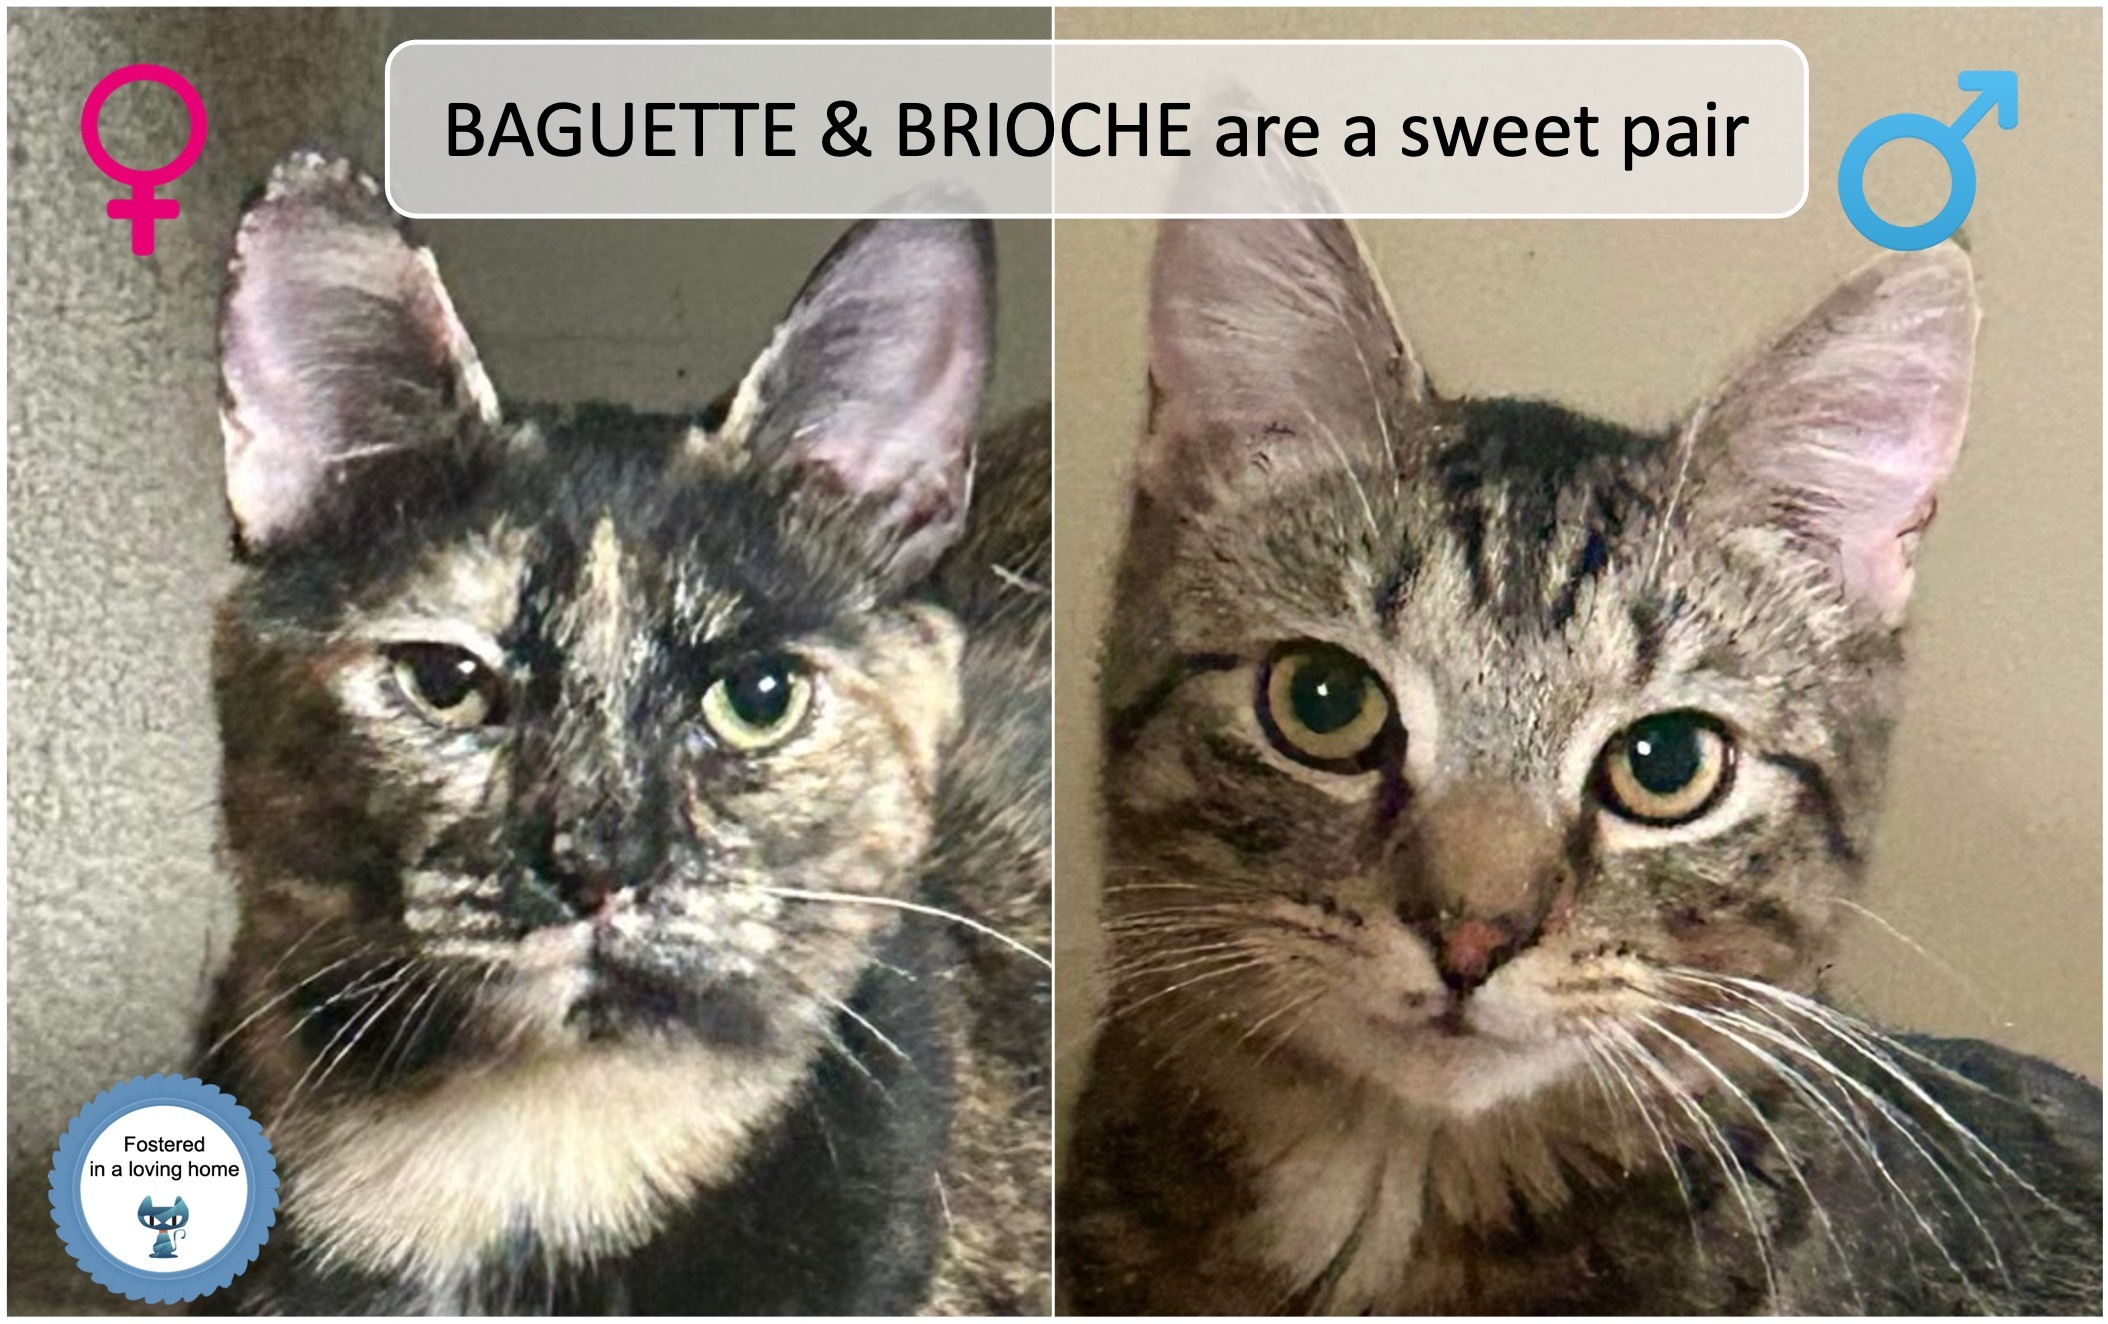 Baguette & Brioche